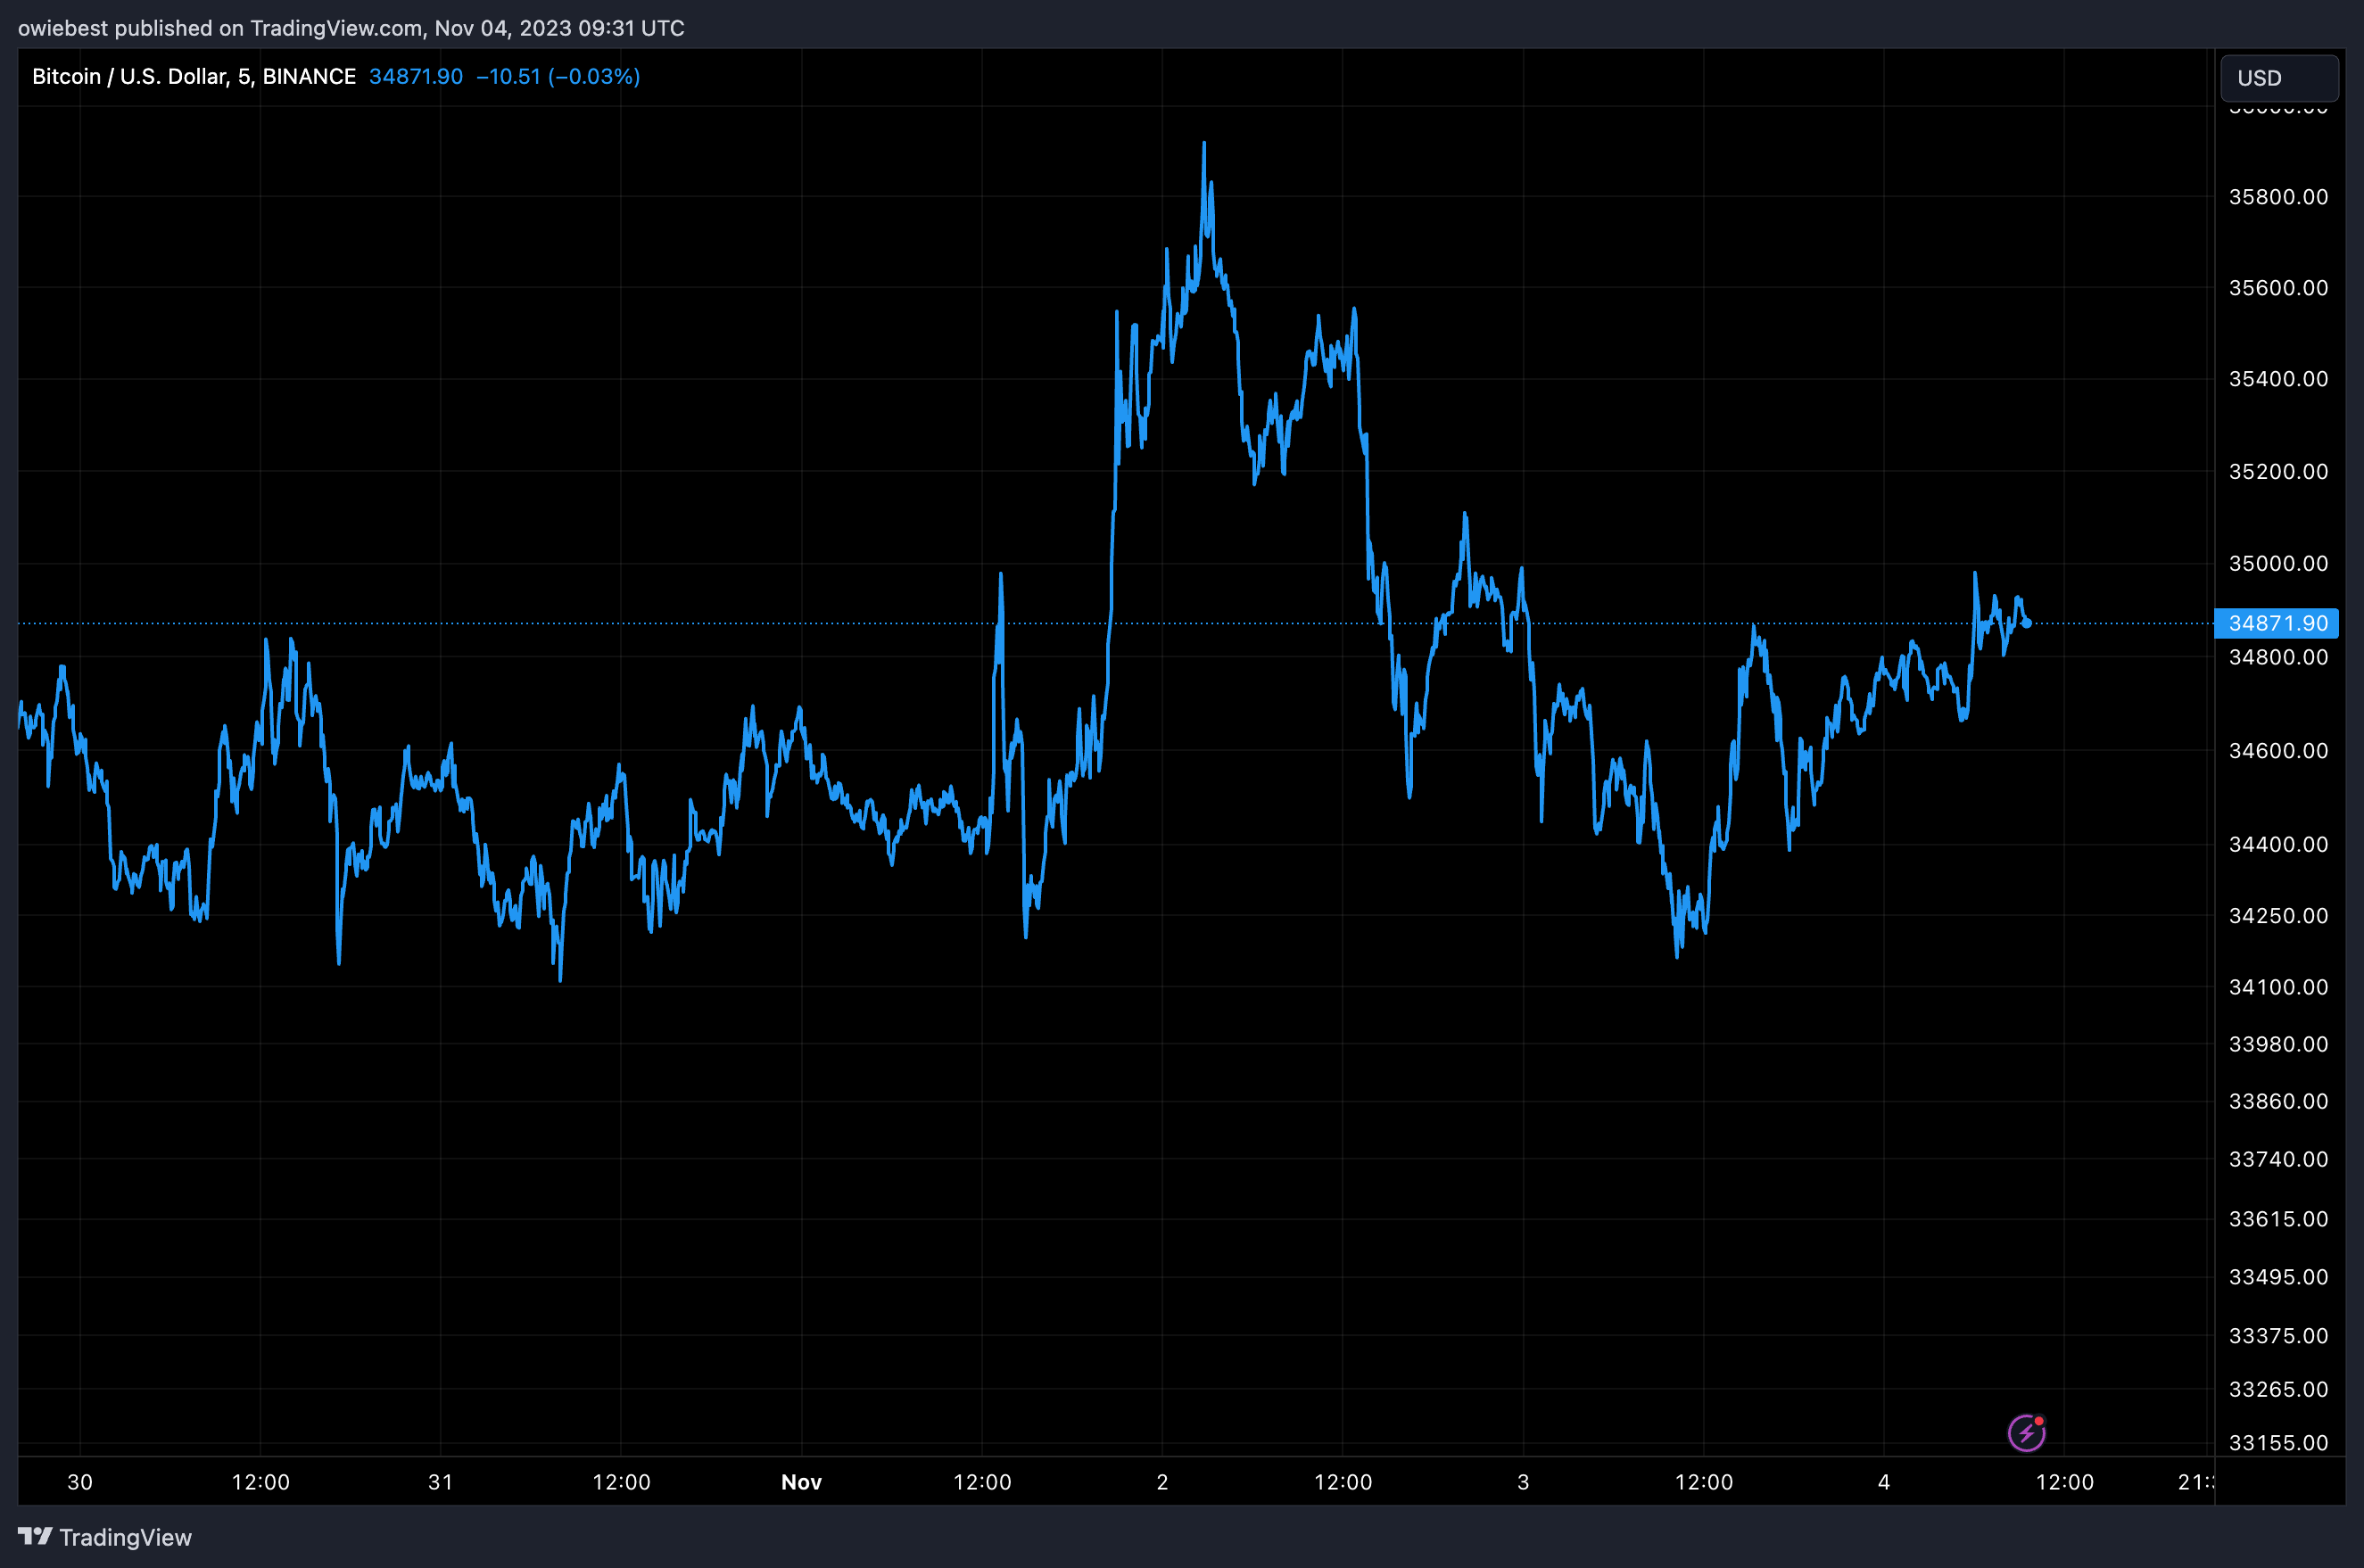 График цен на биткоин от Tradingview.com (Crypto)